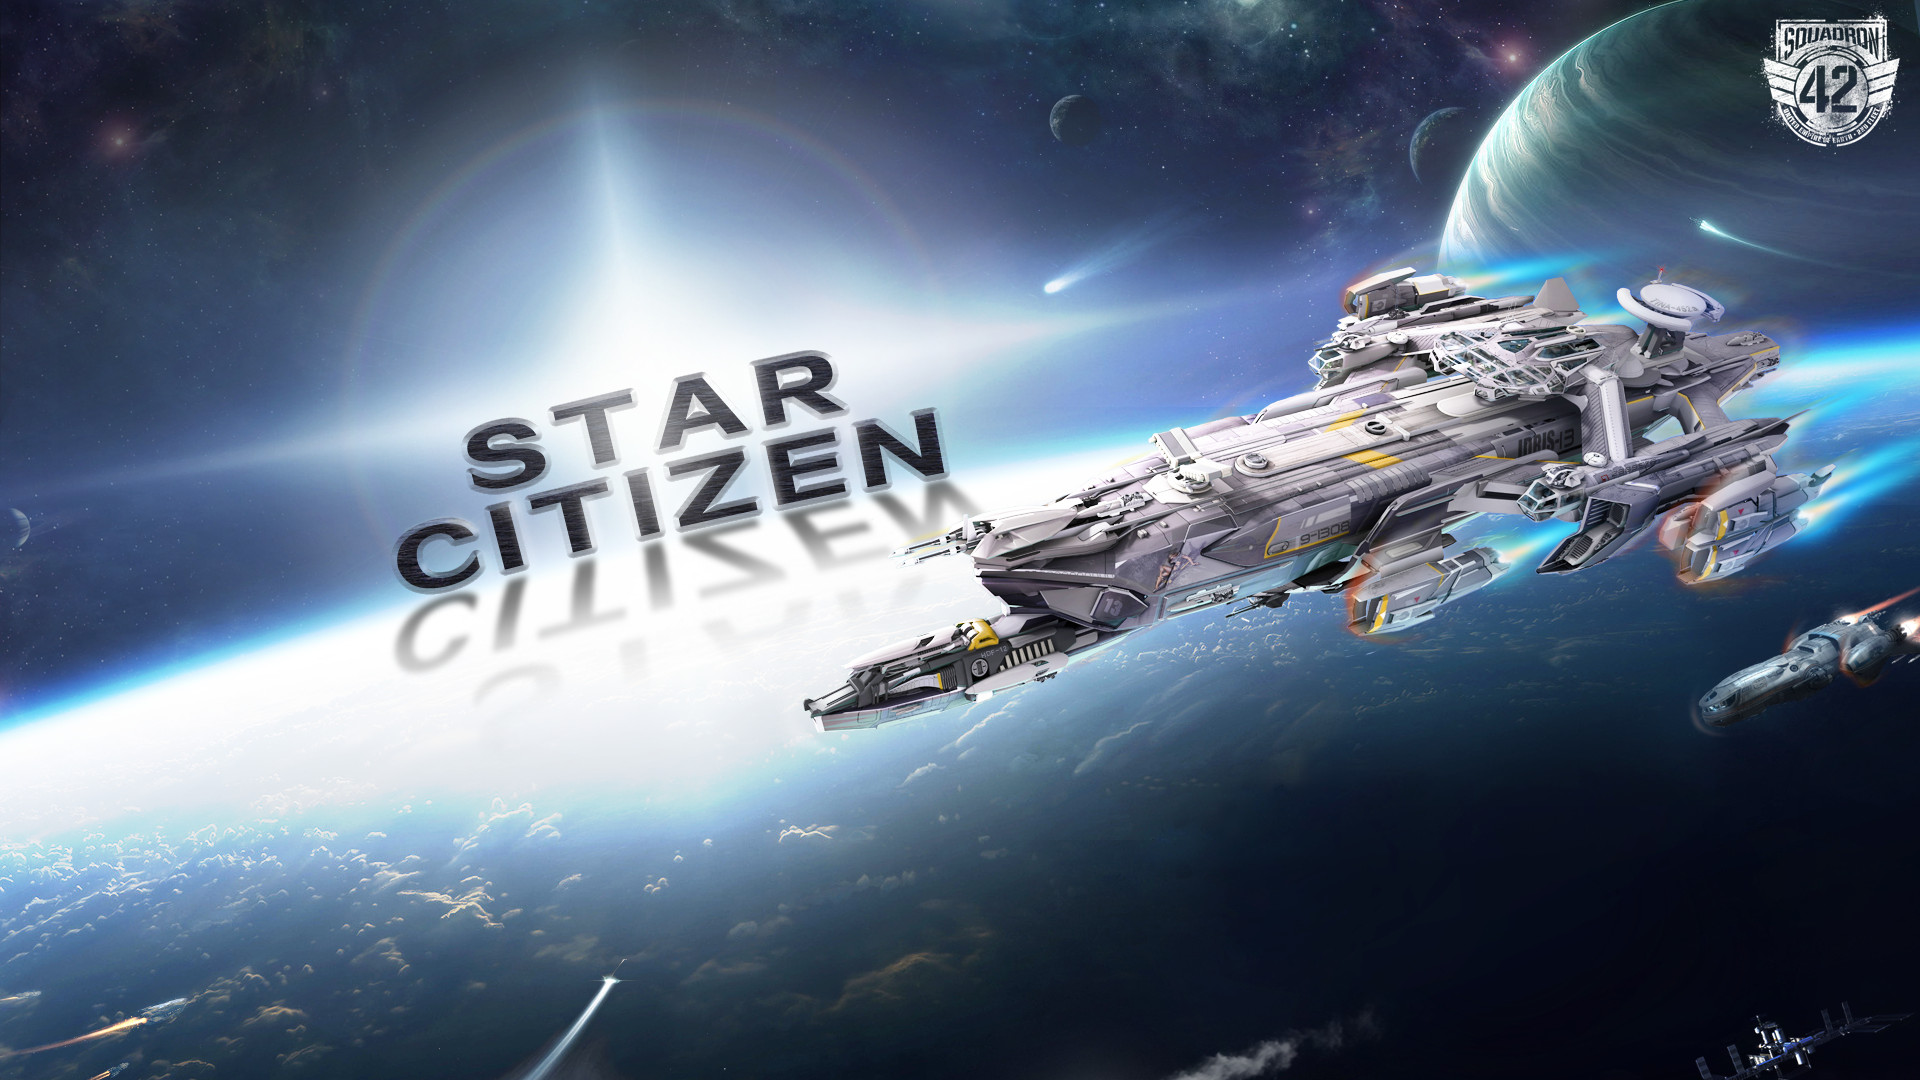 Star citizen 2